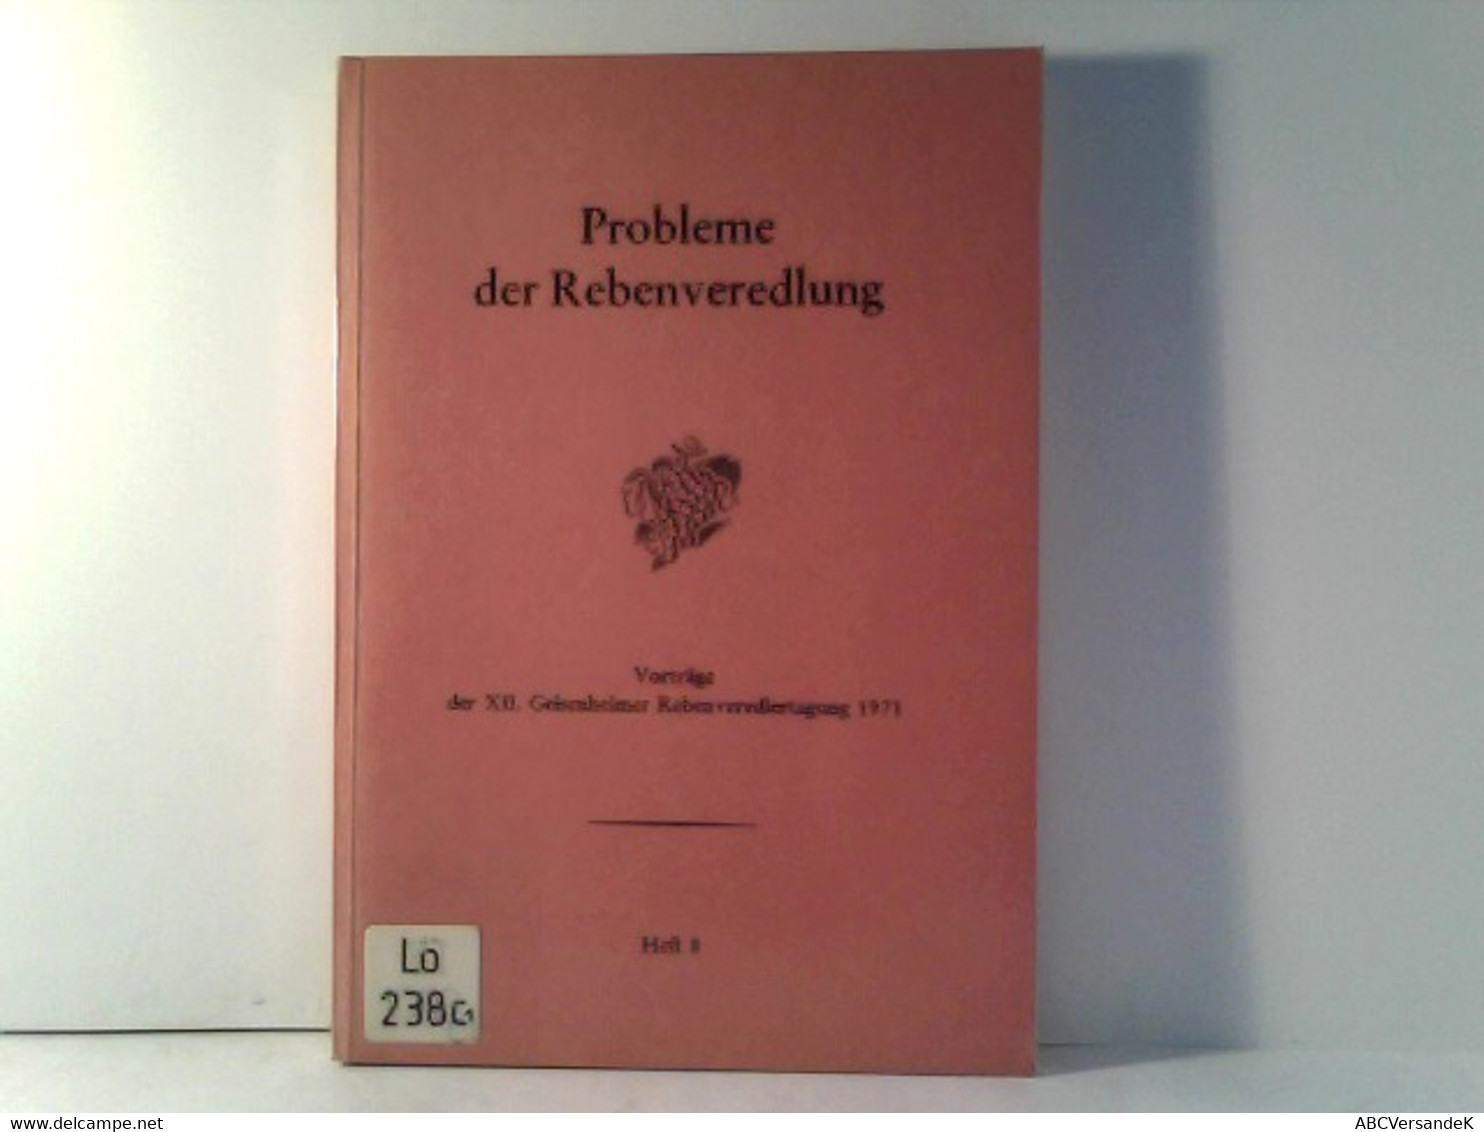 Probleme Der Rebenveredlung - Heft 8 - Vorträge Der XII. Geisenheimer Rebenveredlertagung 1971 - Botanik